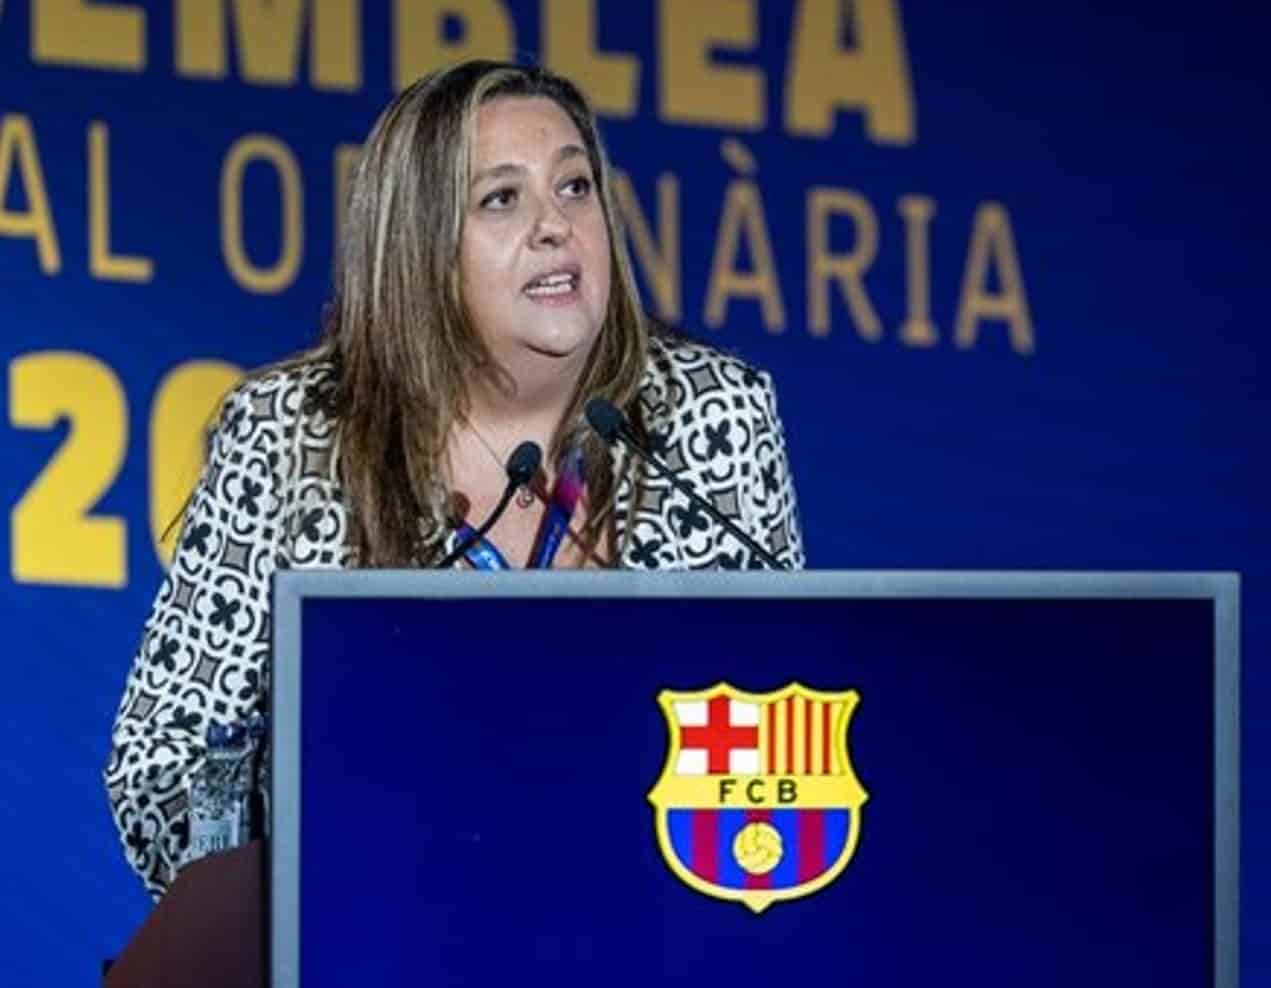 Malestar en el FC Barcelona por un Tuit de Elena Fort